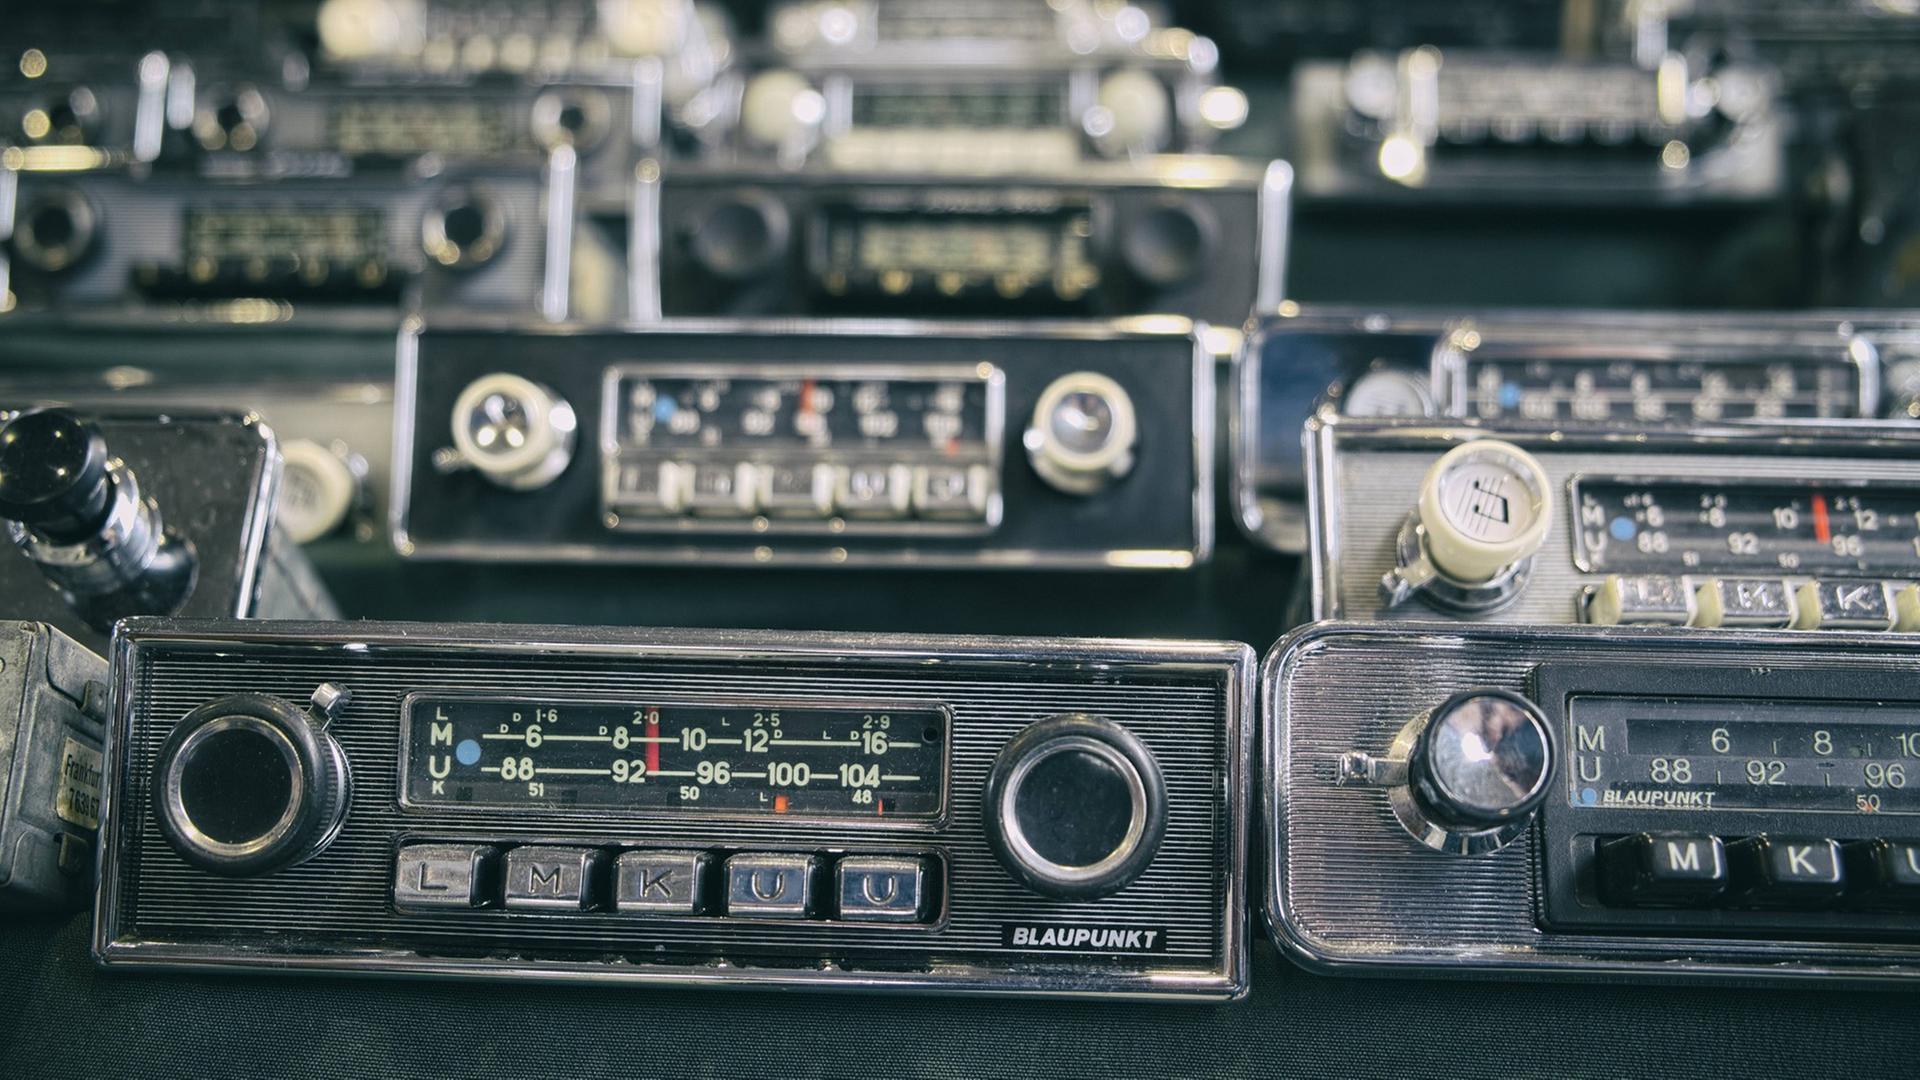 Audio mobil - Eine kleine Kulturgeschichte des Autoradios